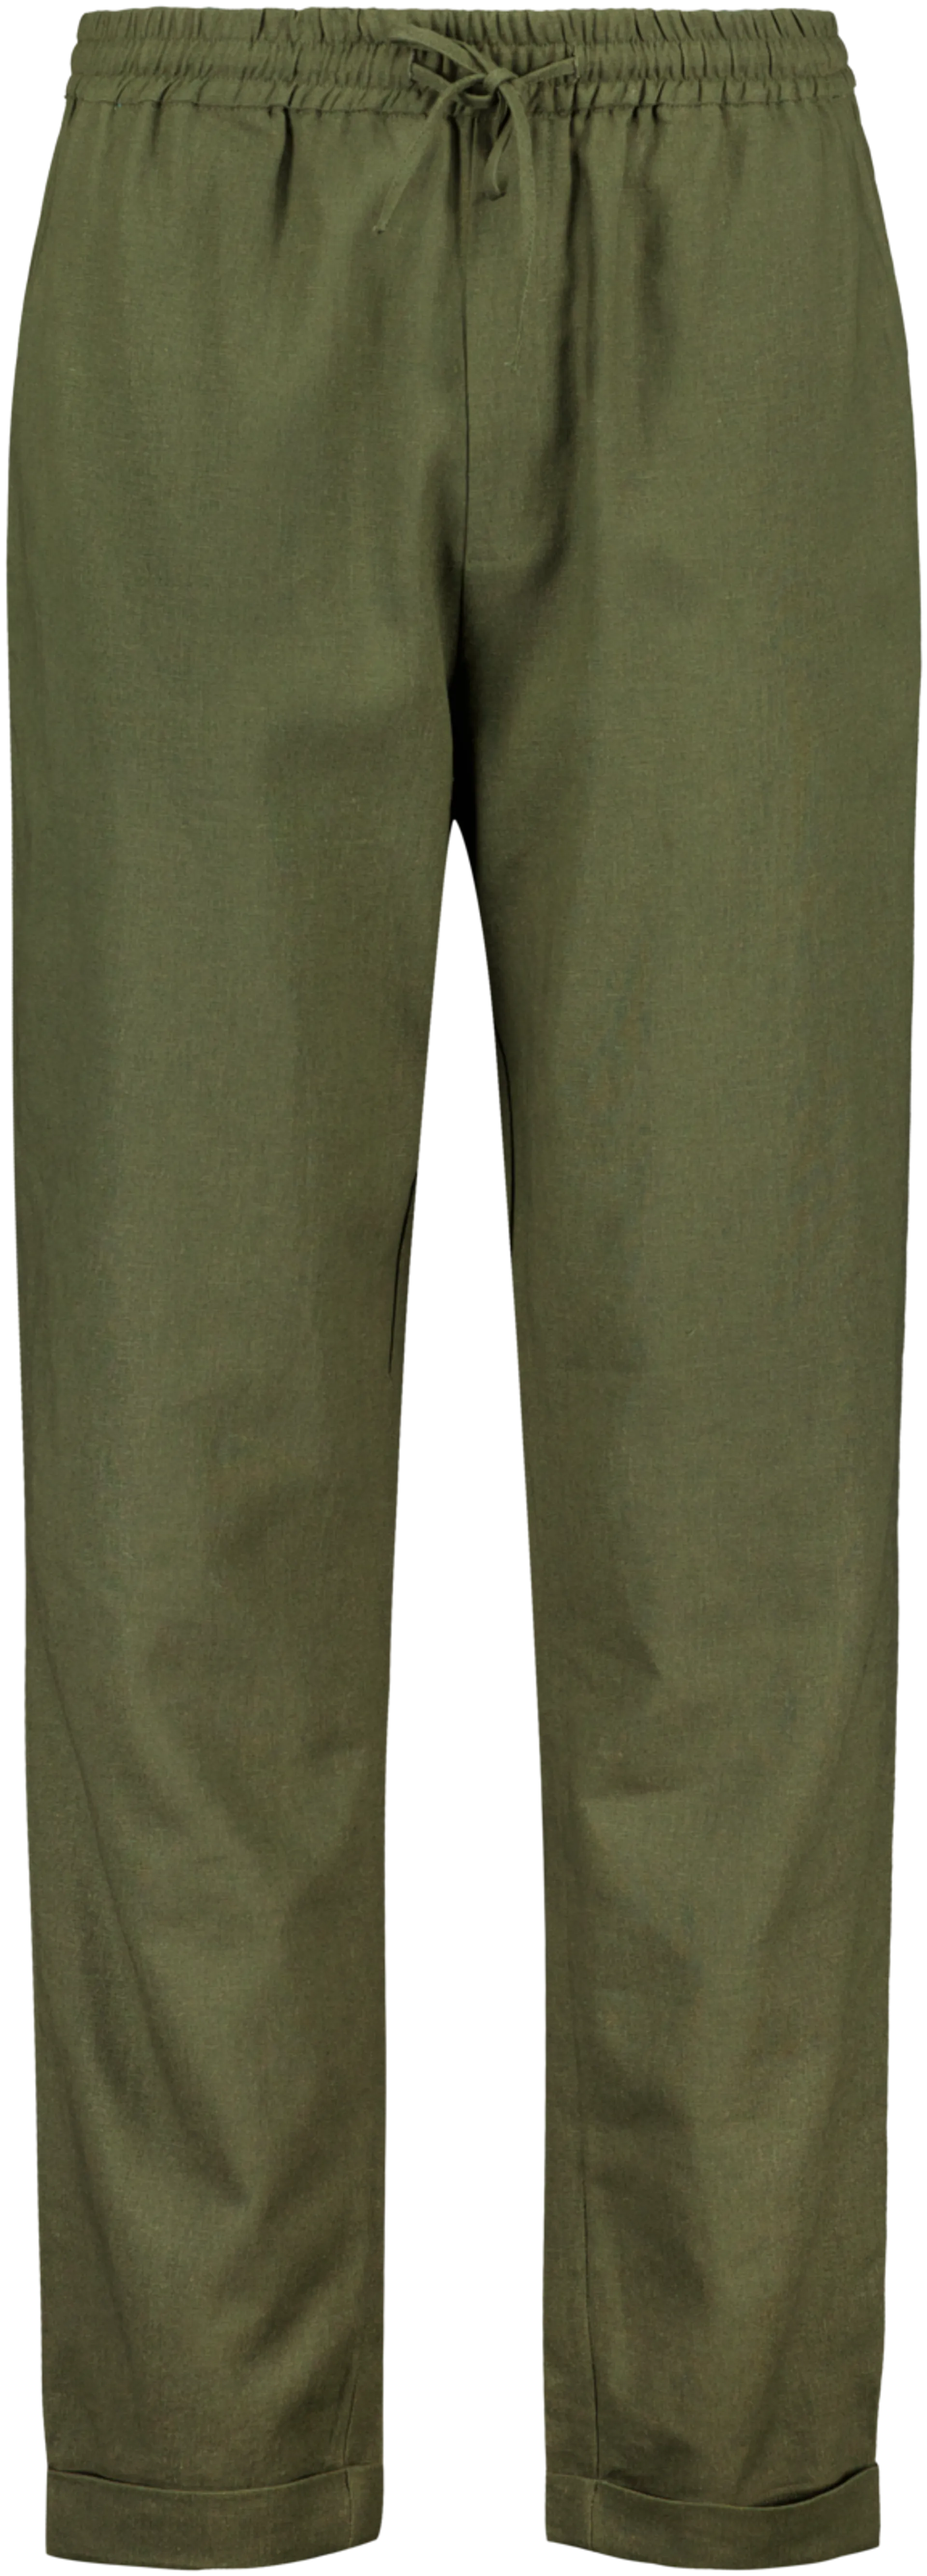 London Fog miesten housut pellavasekoitetta 202LF15245 - Olive green - 1